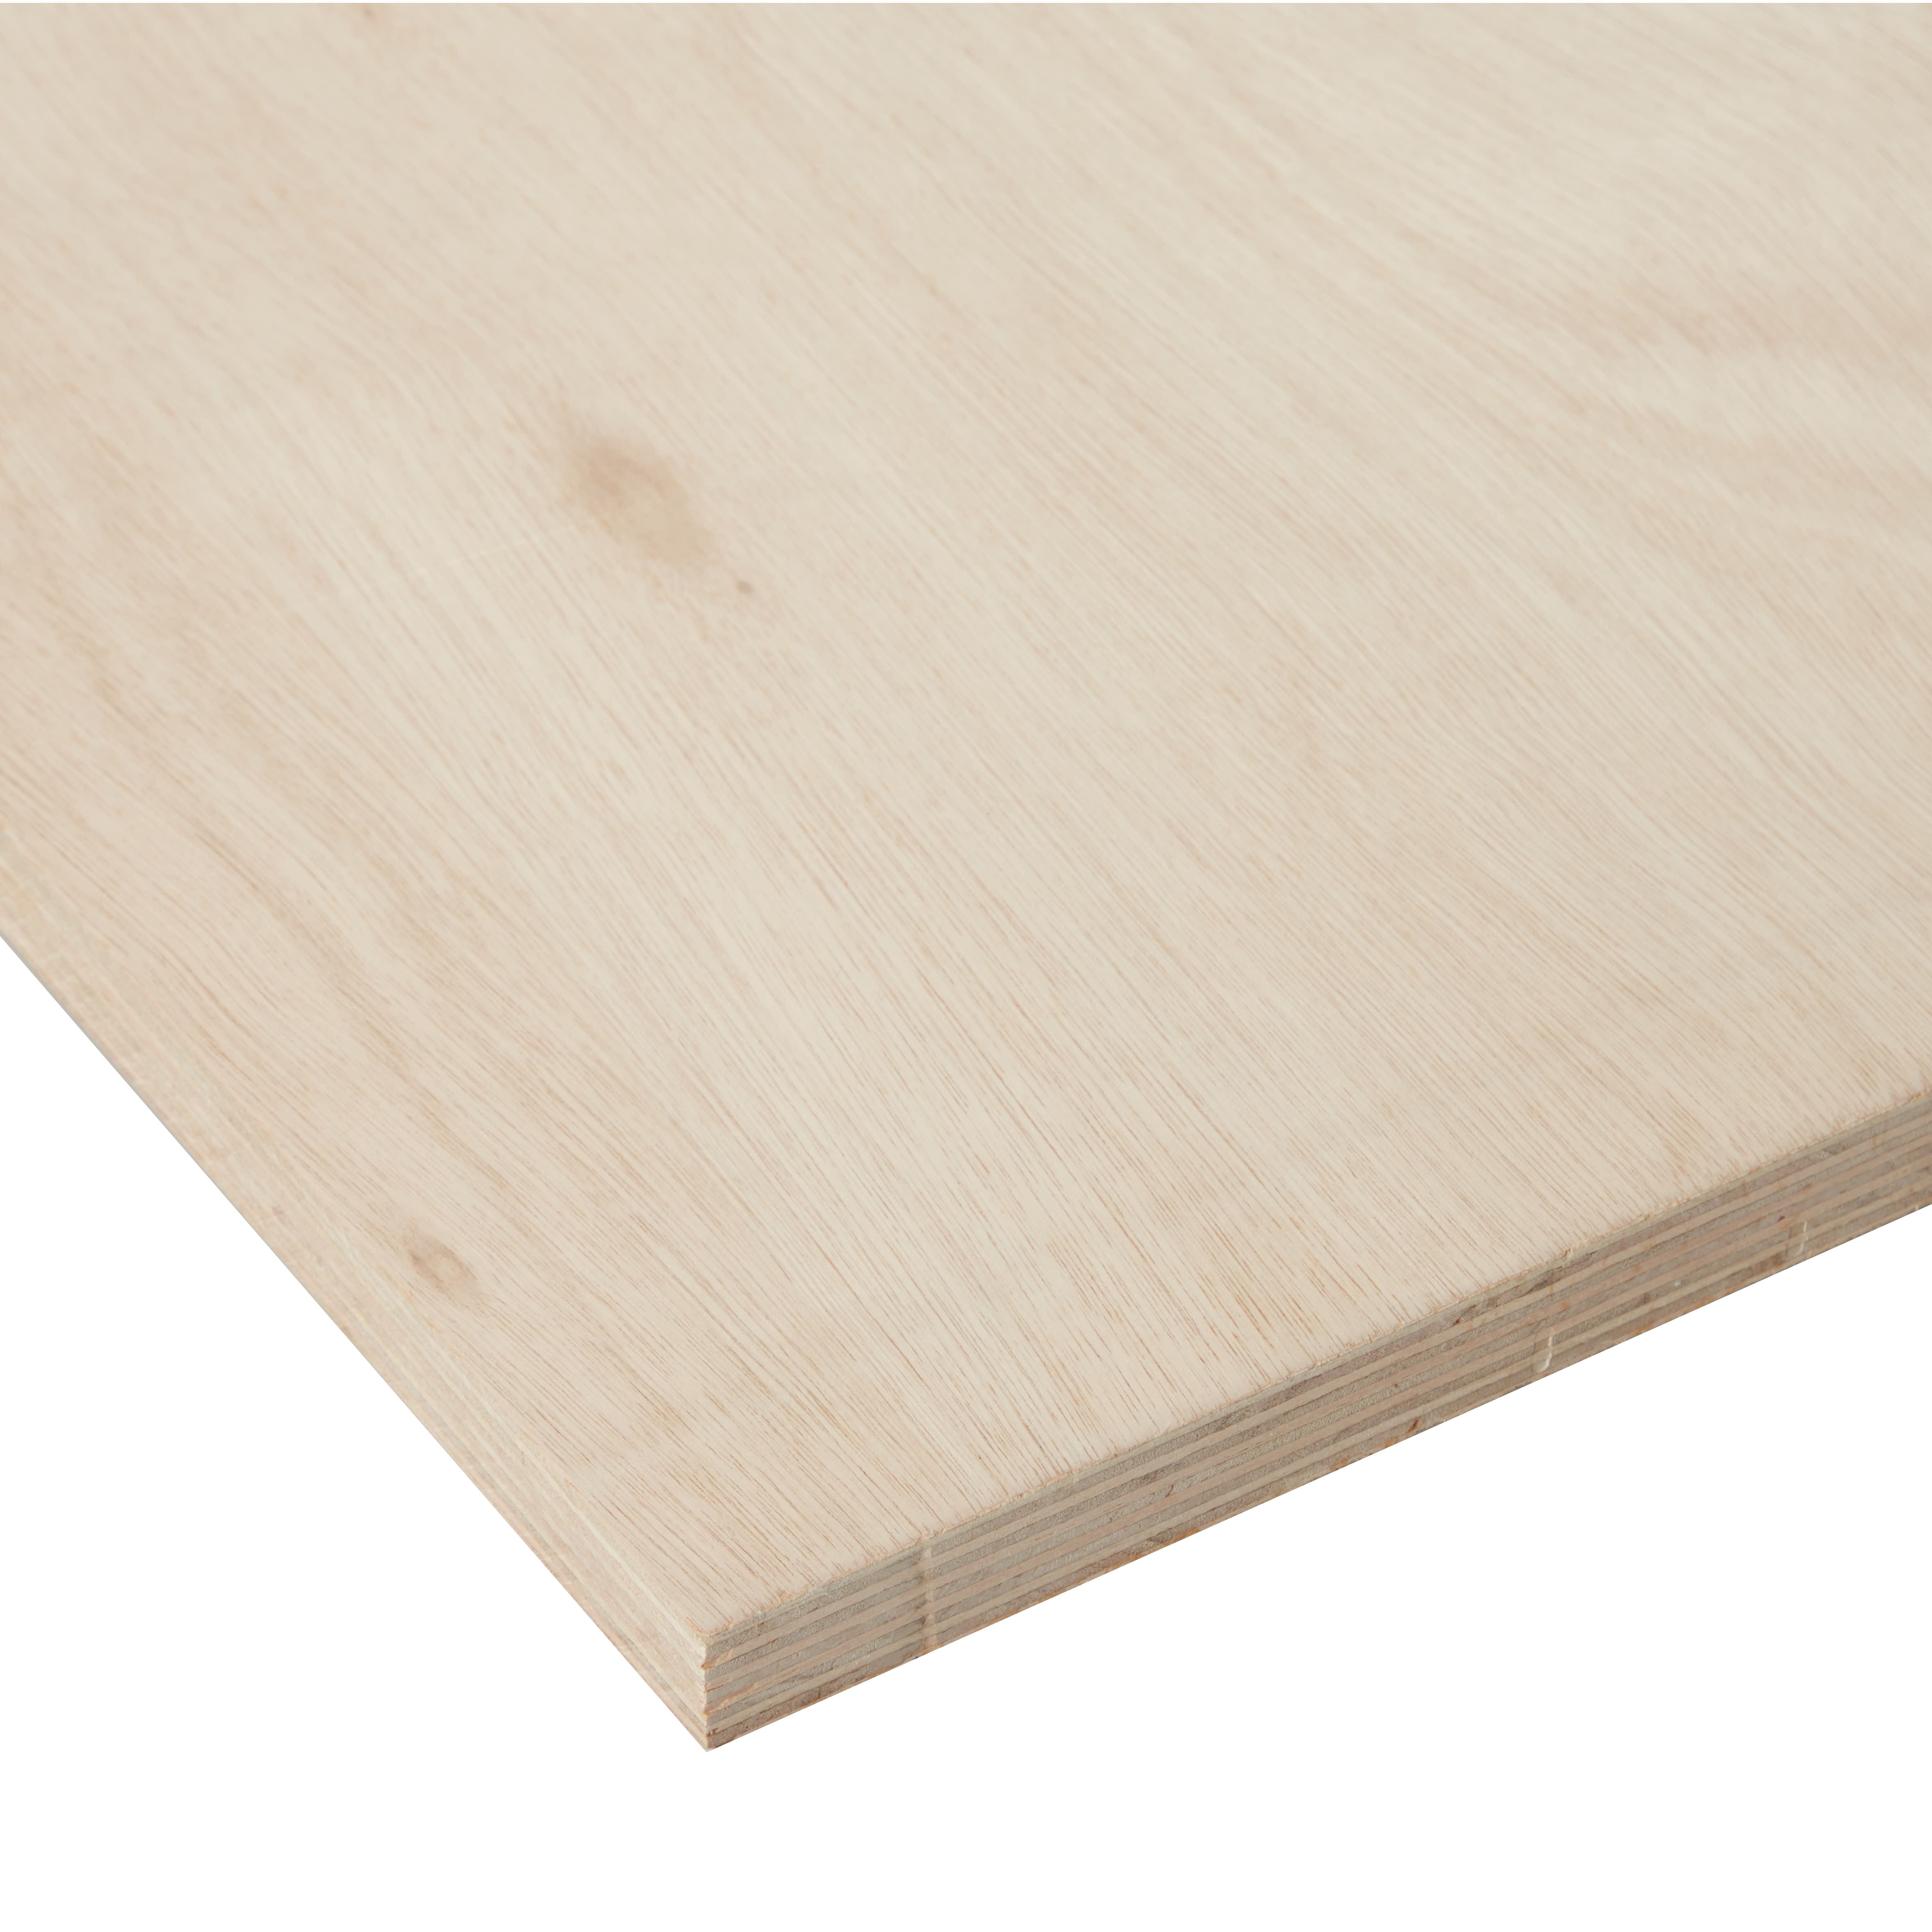 Hardwood Plywood Board (L)0.81m (W)0.41m (T)18mm 3000g